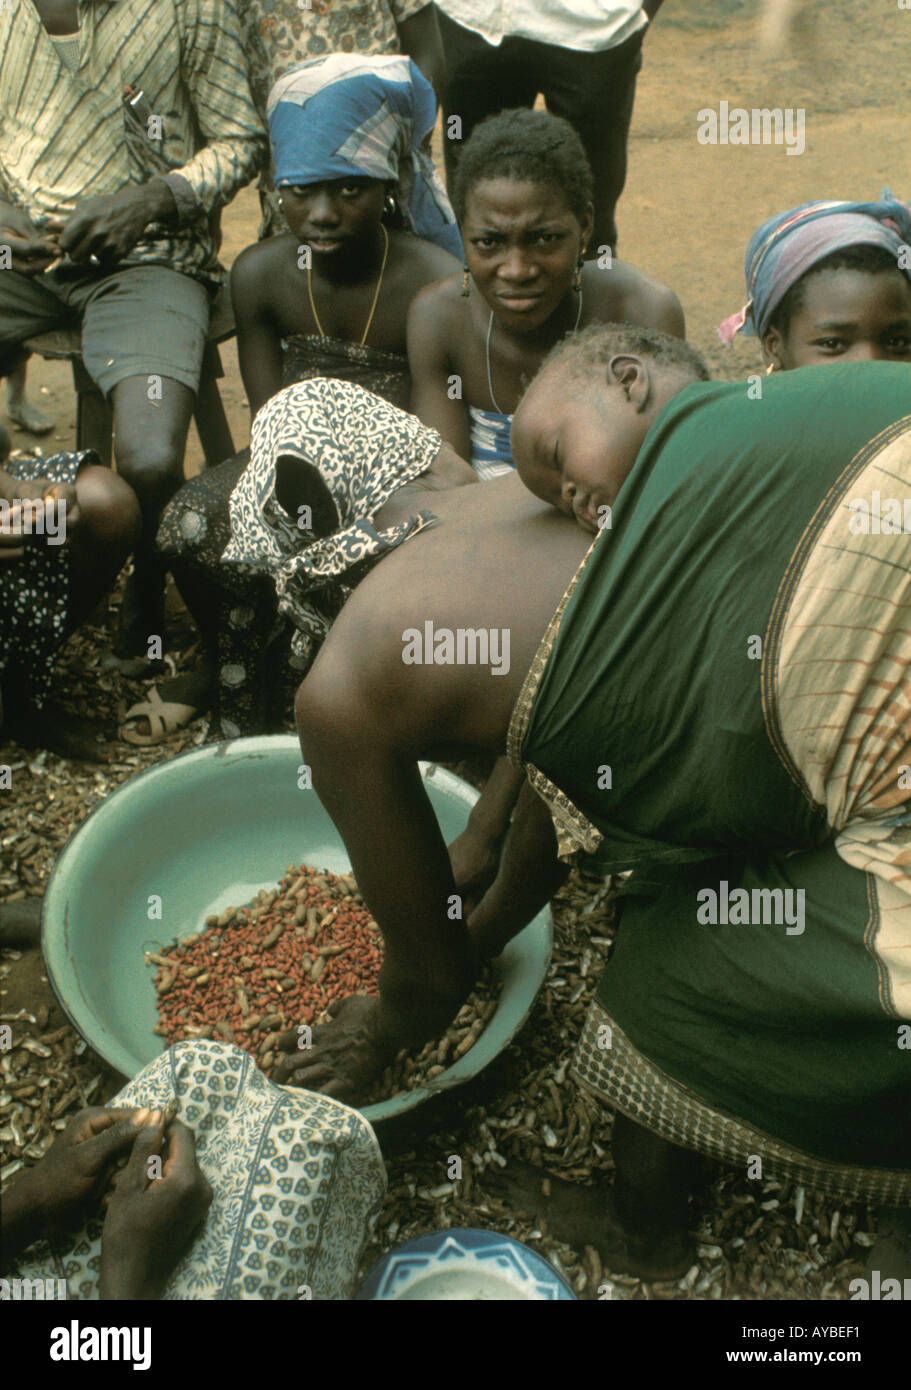 Westafrika, Liberia. Gruppe von Dorfbewohnern der ethnischen Gruppe Kpelle, die Erdnüsse beschießen. Die Frau trägt das Baby auf dem Rücken. Stockfoto